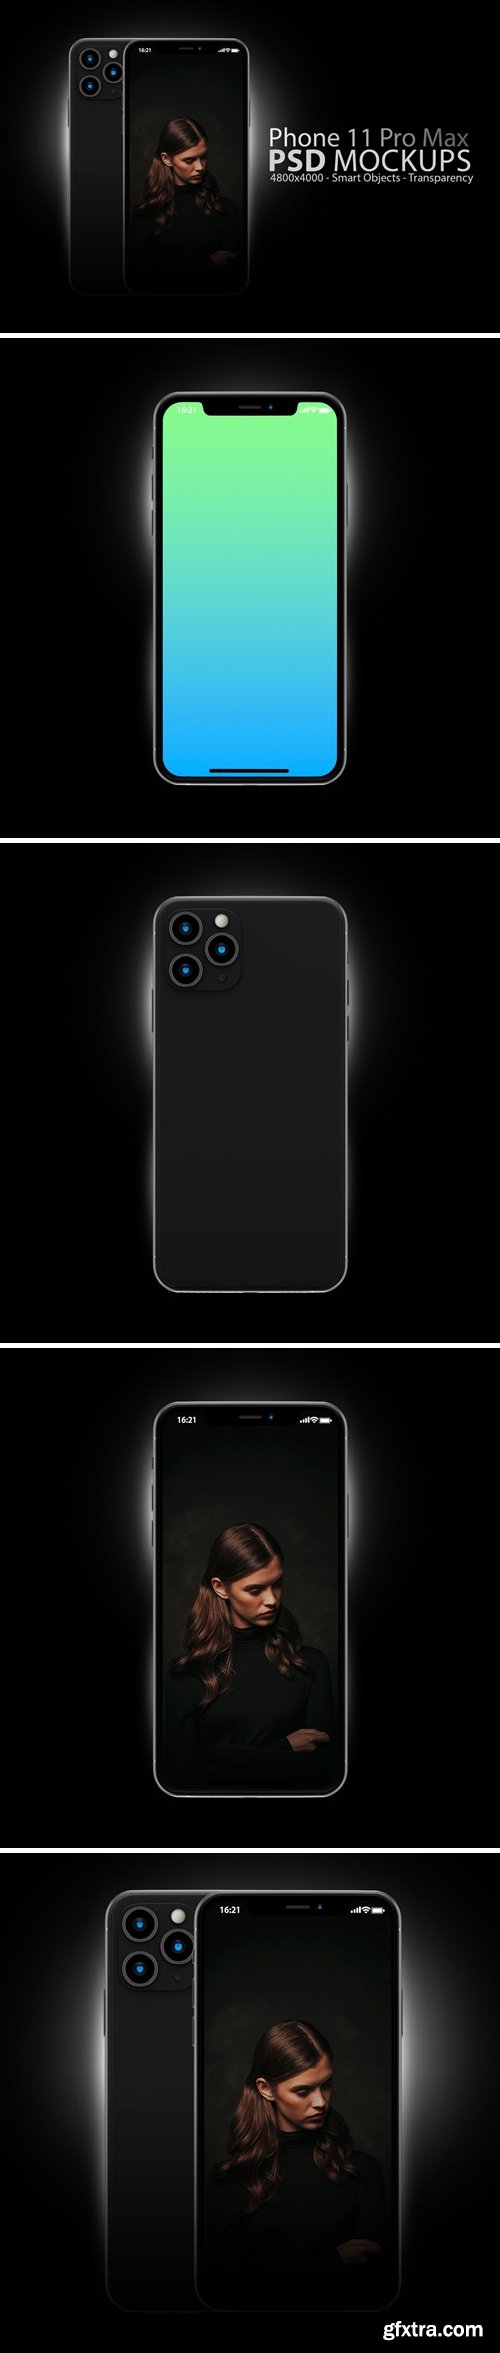 Phone 11 PSD Mockups in Black